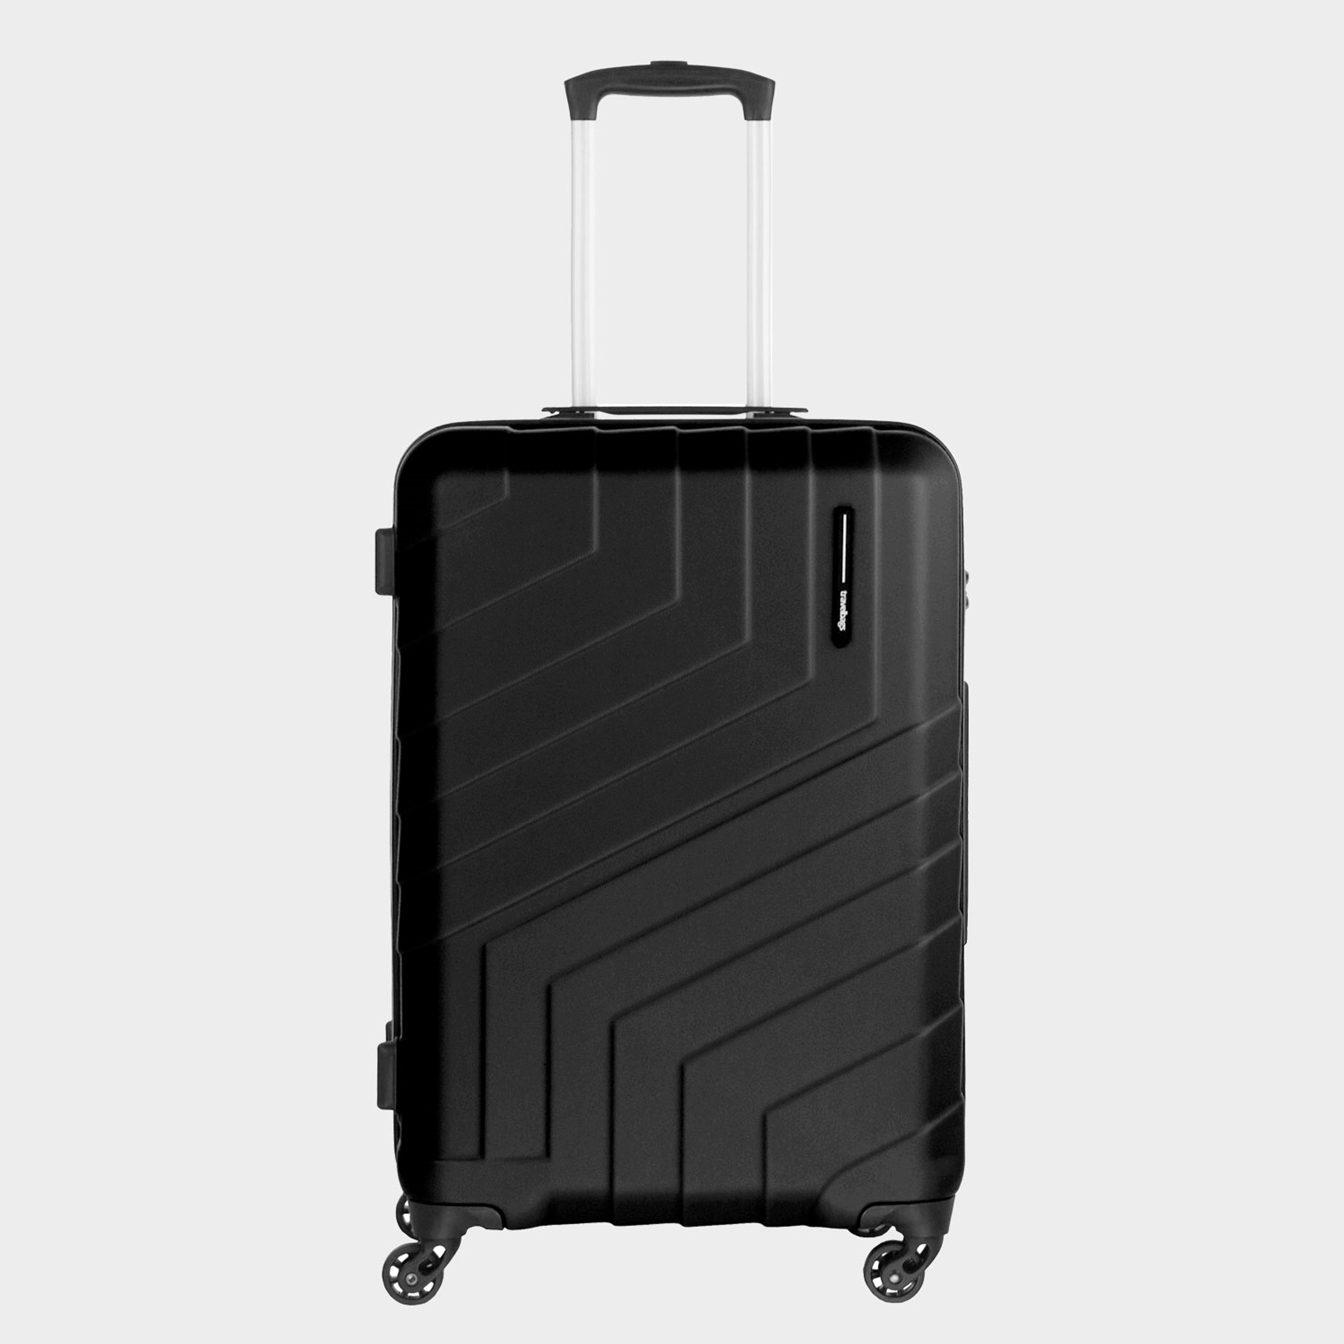 langs Generaliseren voorzichtig Welk formaat koffer moet ik kiezen? Het juiste formaat koffer |  Travelbags.nl | Travelbags.nl